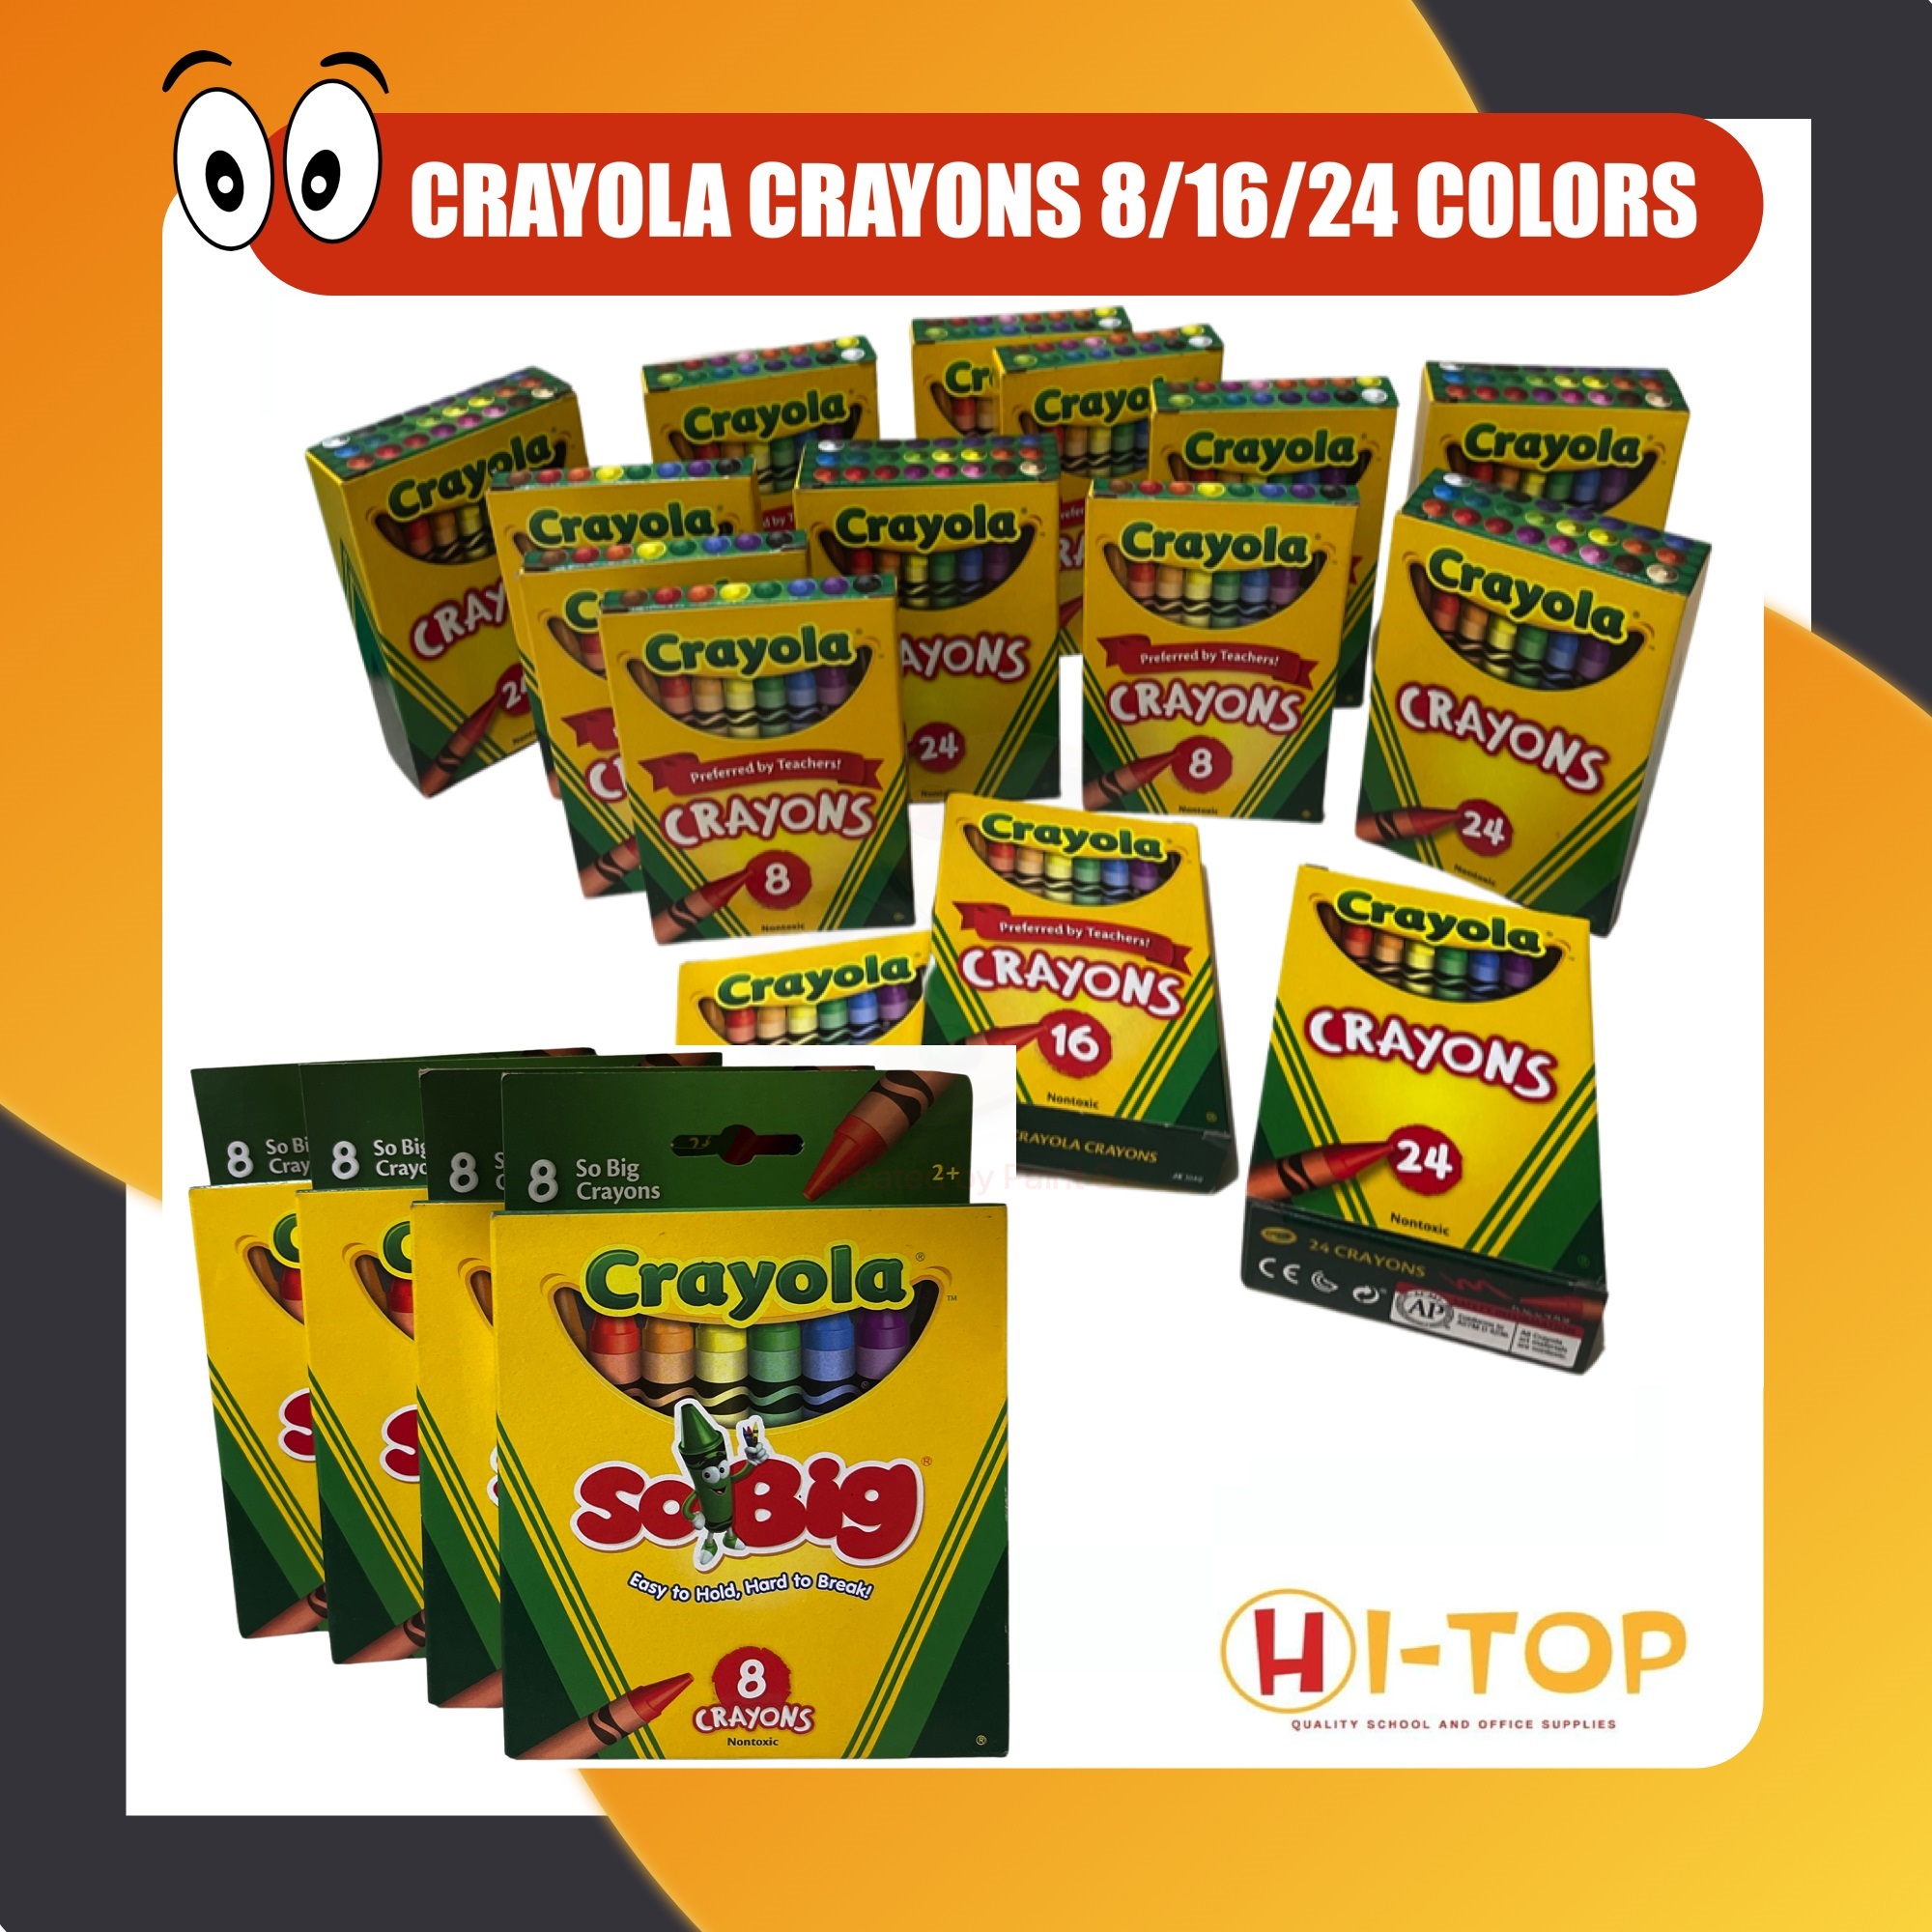 Crayola Special Effects Crayon Set